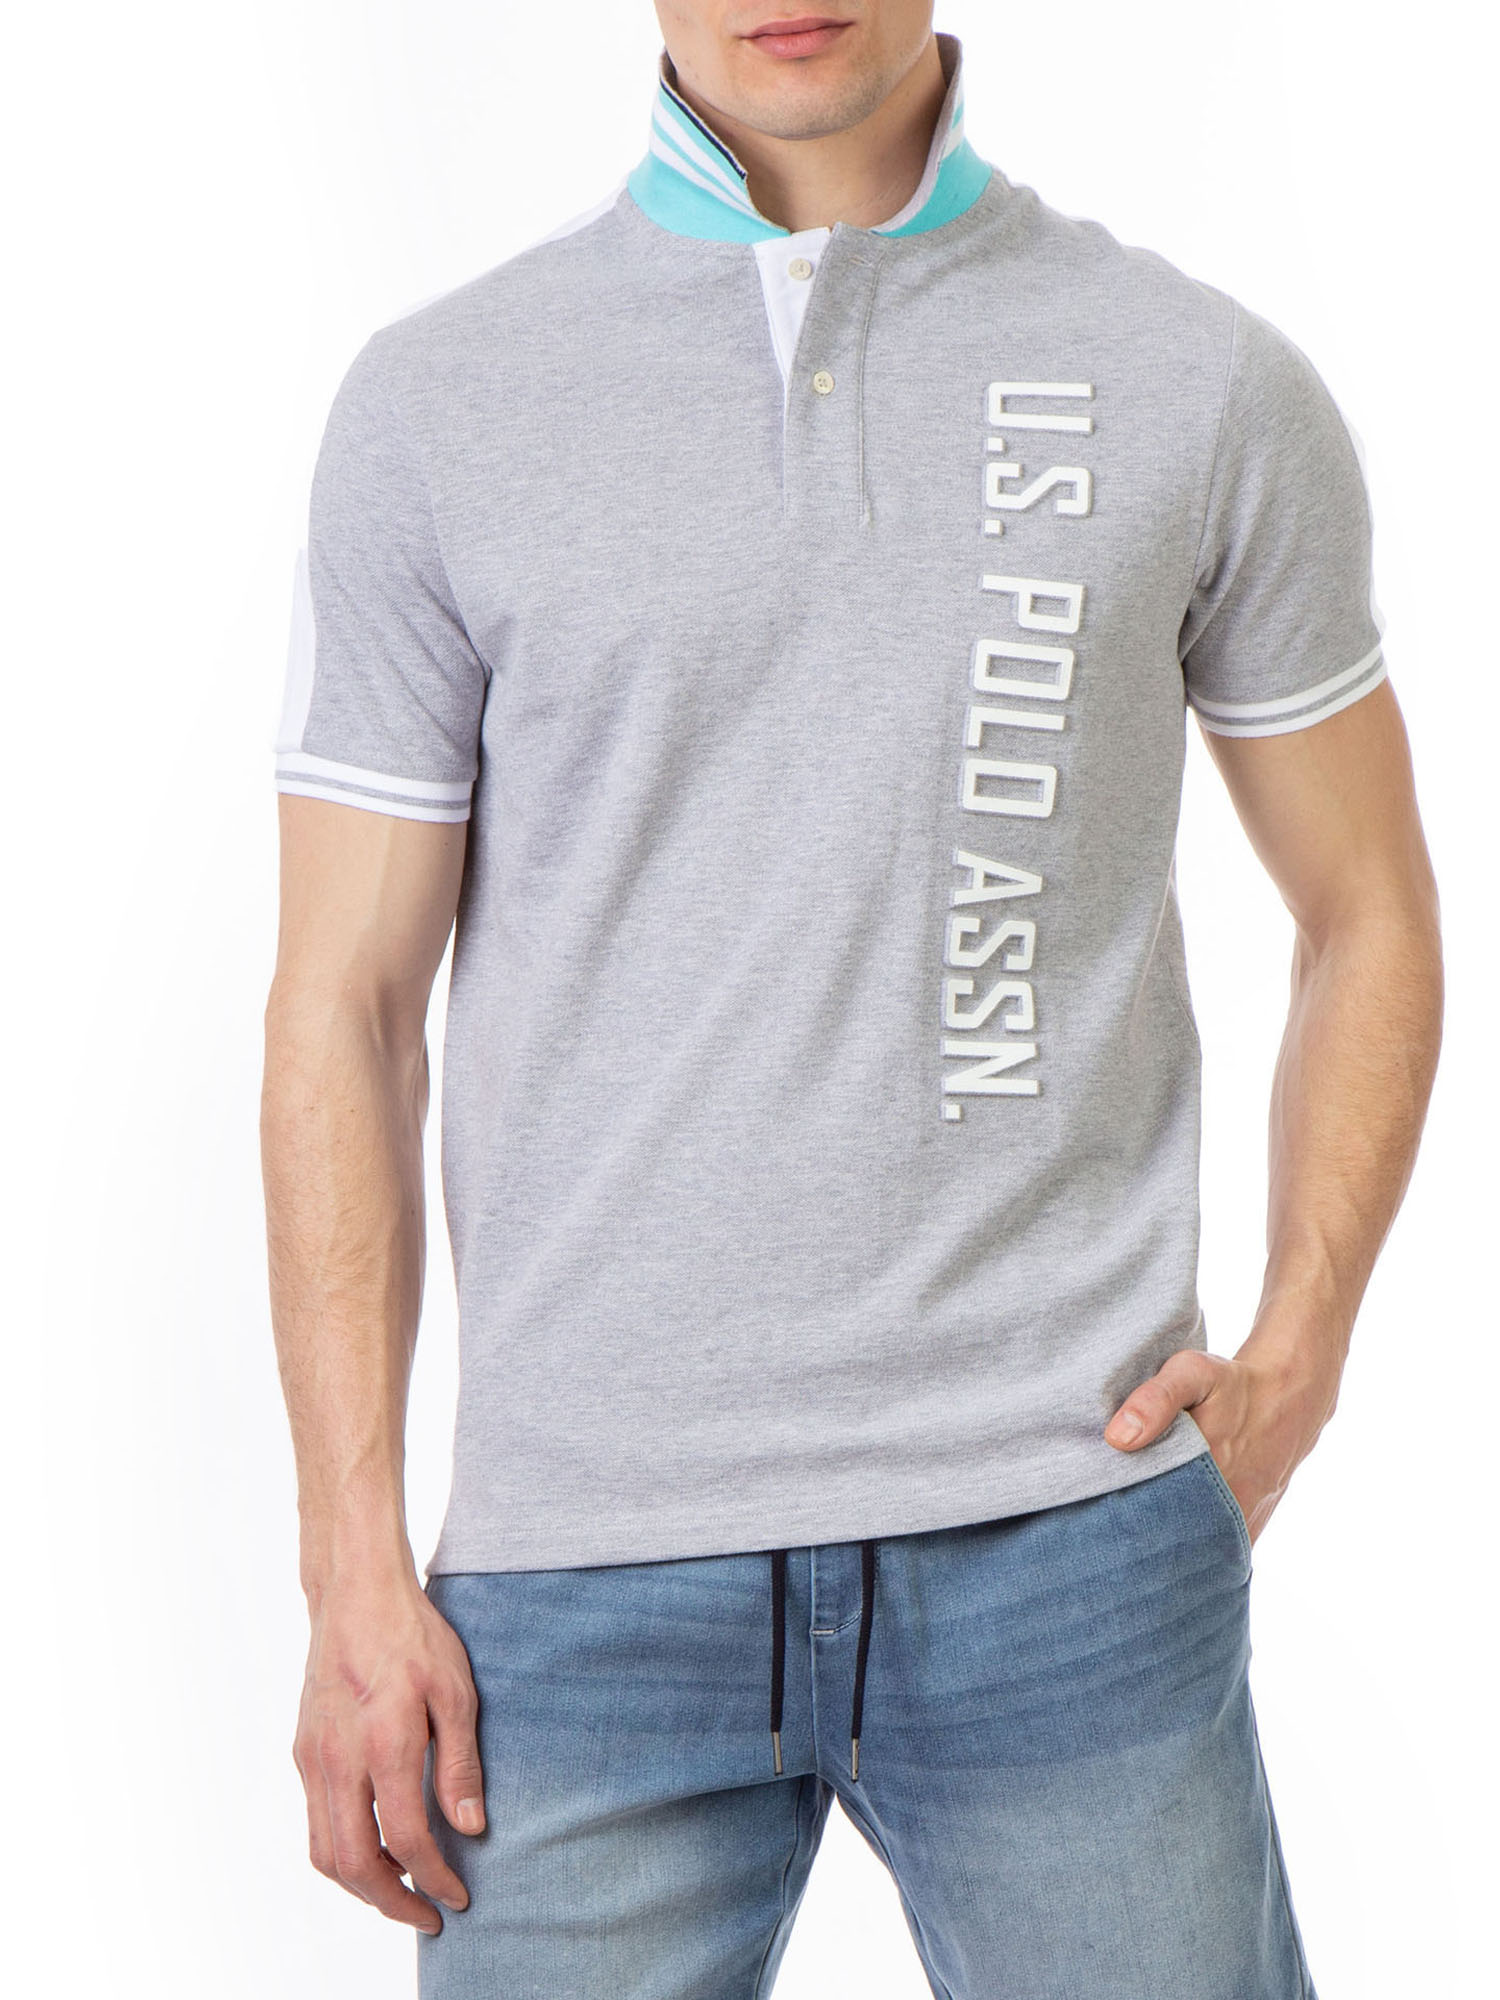 U.S. Polo Assn. Men's Embossed Logo Pique Polo Shirt - image 4 of 5